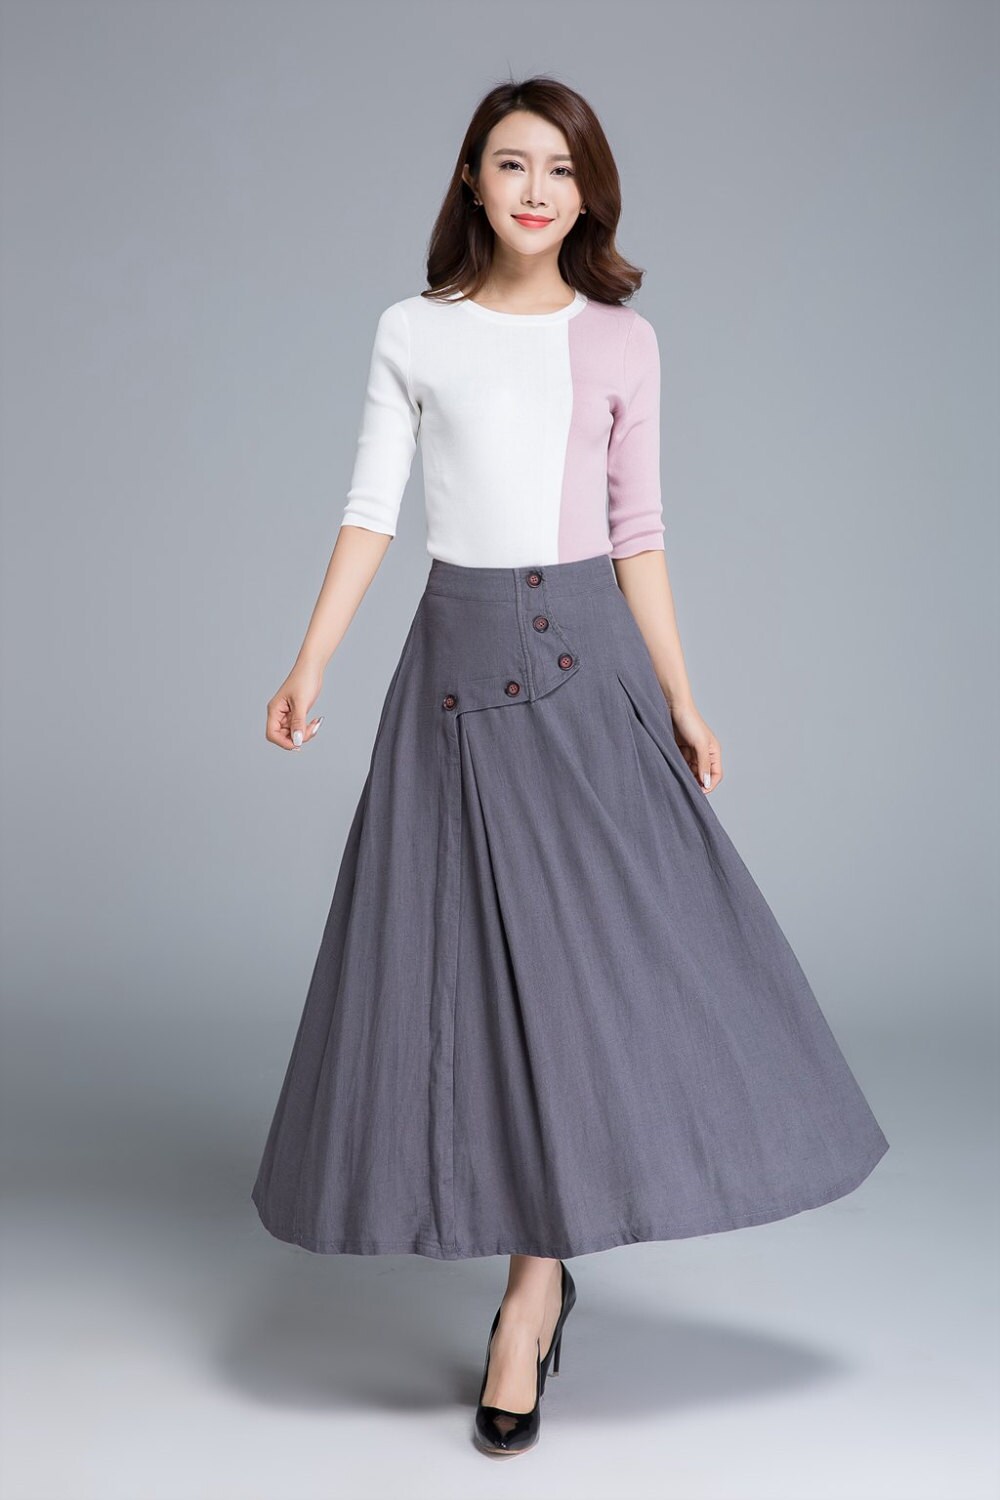 Linen skirt spring skirt button skirt elastic skirt maxi | Etsy